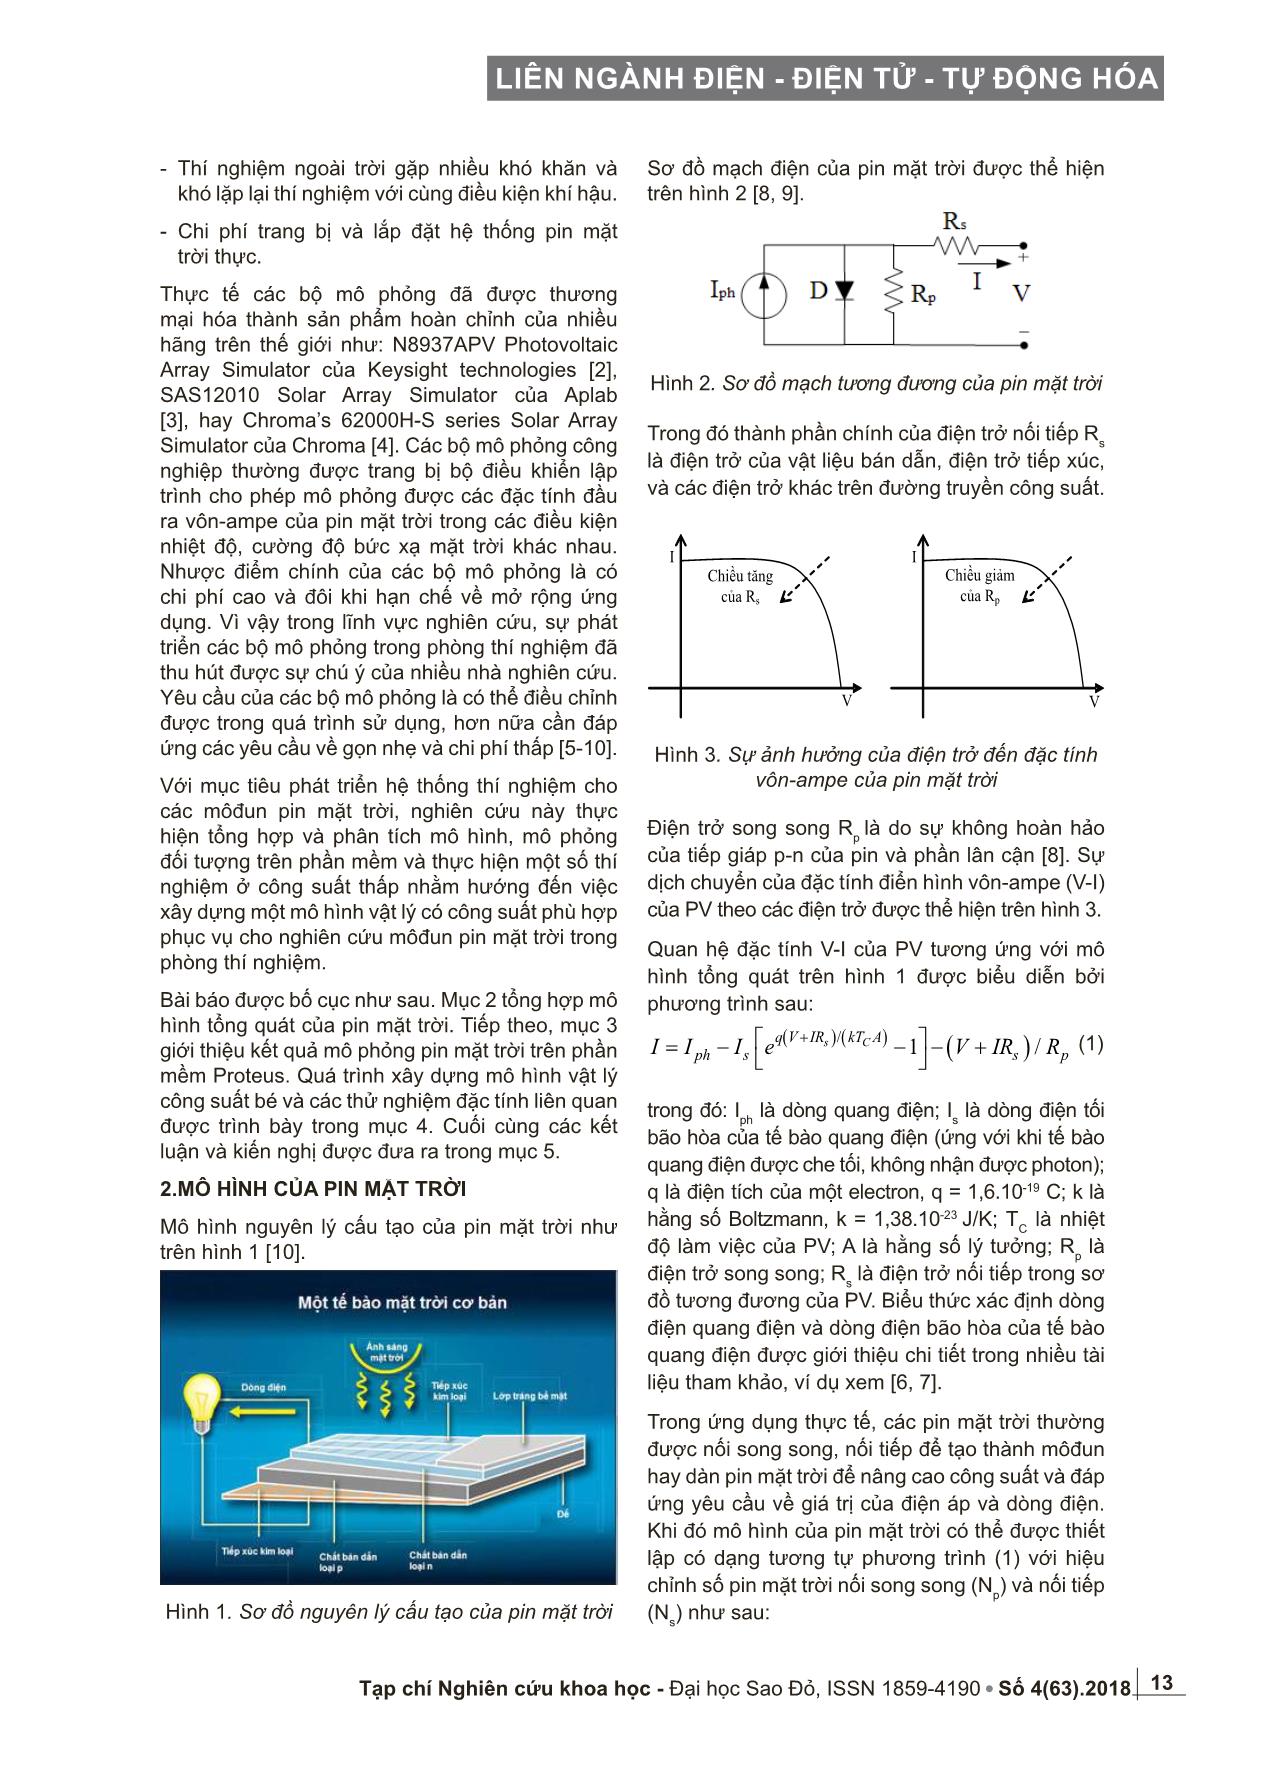 Nghiên cứu và phát triển mô hình vật lý của pin mặt trời trang 2